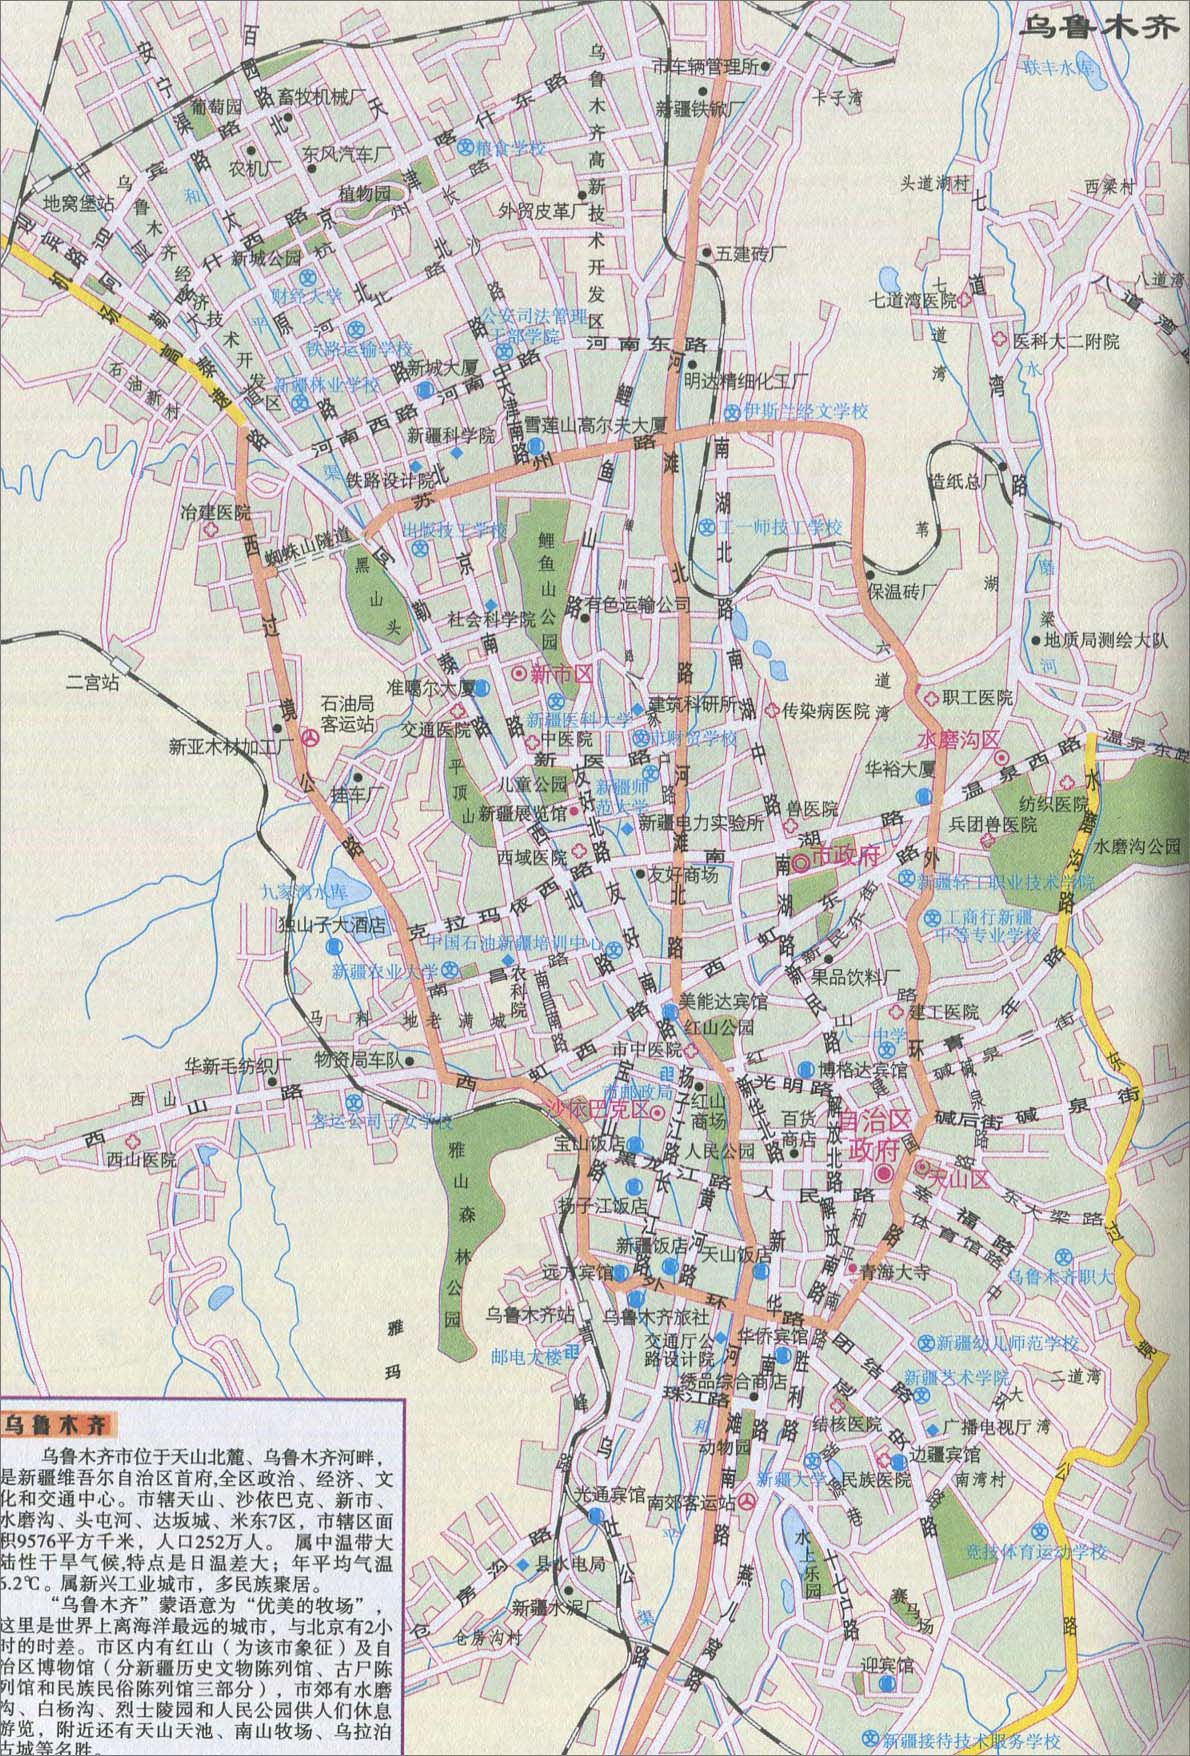 地图库 旅游地图 新疆旅游 >> 乌鲁木齐城区旅游地图  分类: 新疆旅游